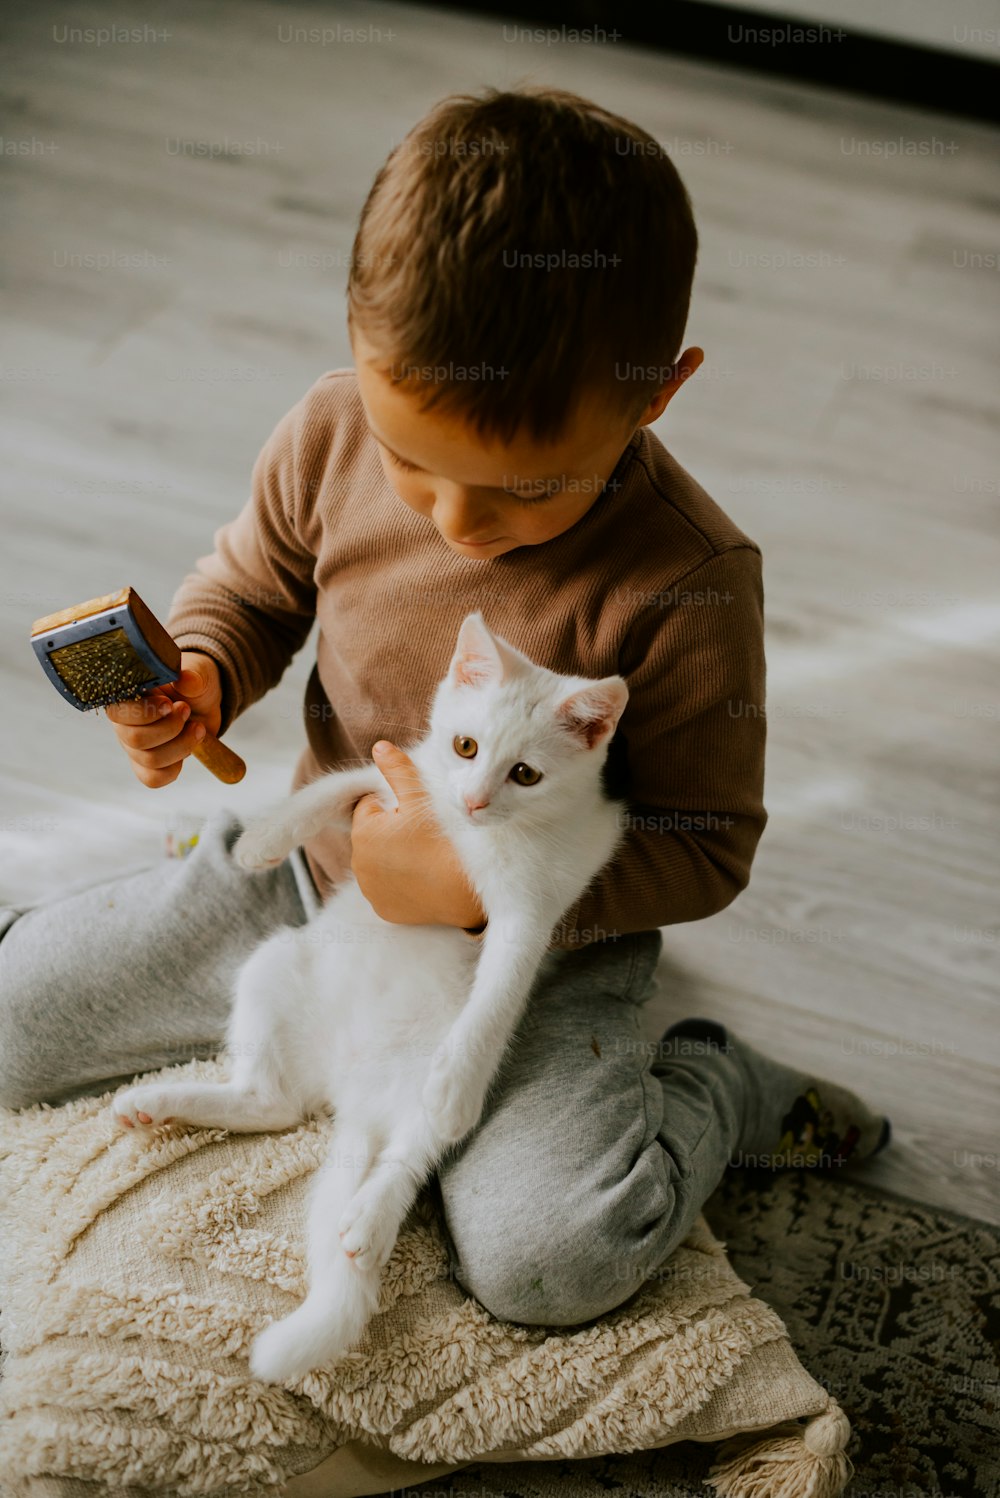 Un niño sosteniendo un gato blanco mientras está sentado en el suelo